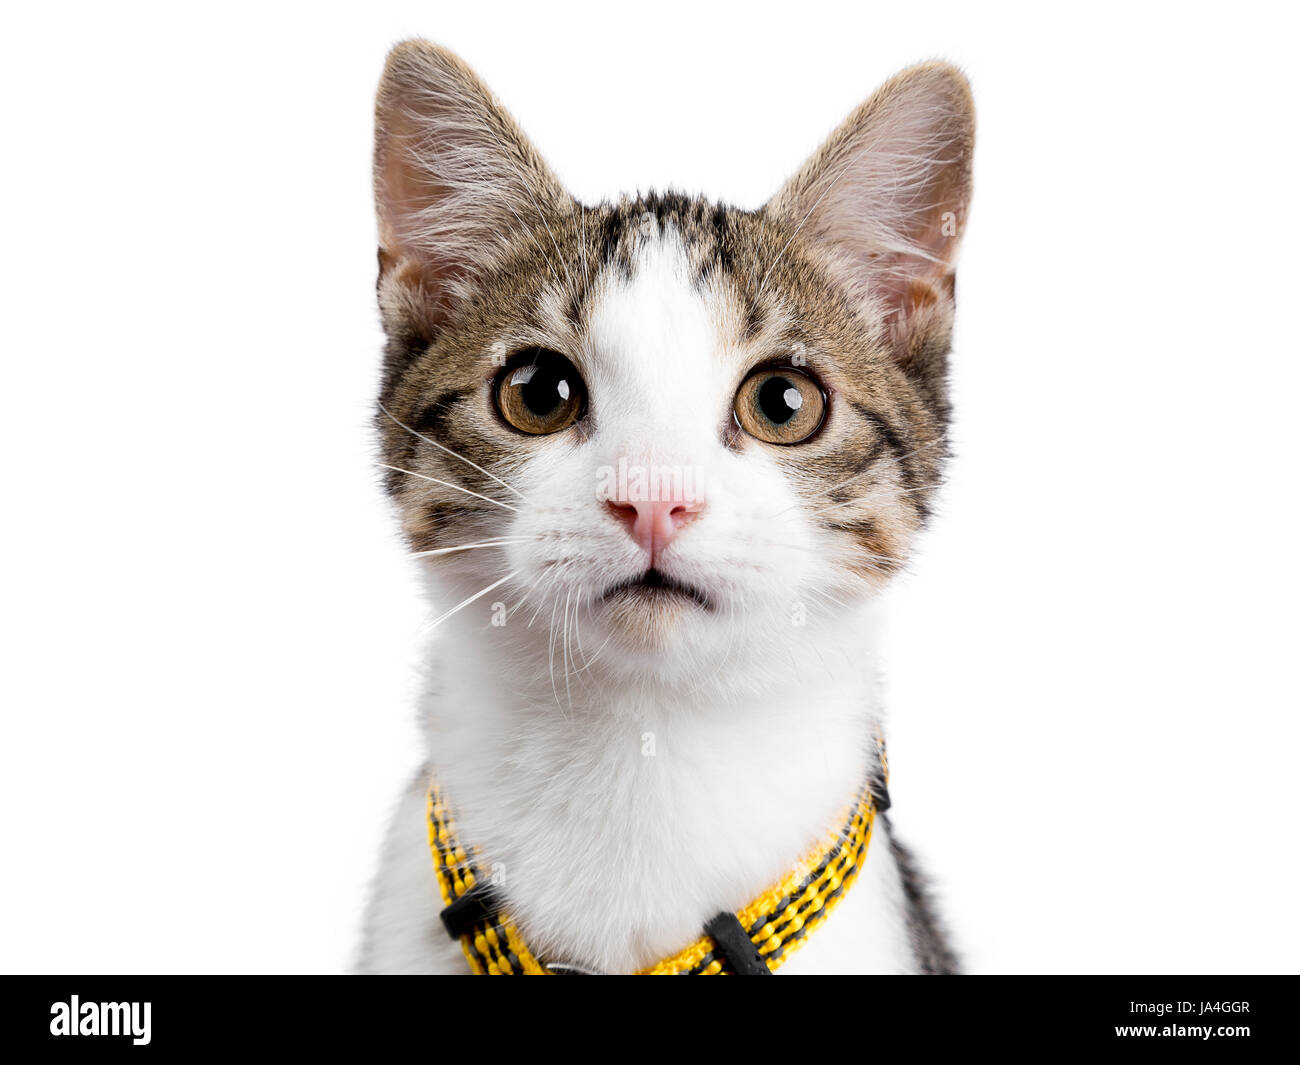 Colpo alla testa della European Shorthair kitten / gatto su sfondo bianco indossando harnas giallo e guardando nella telecamera Foto Stock